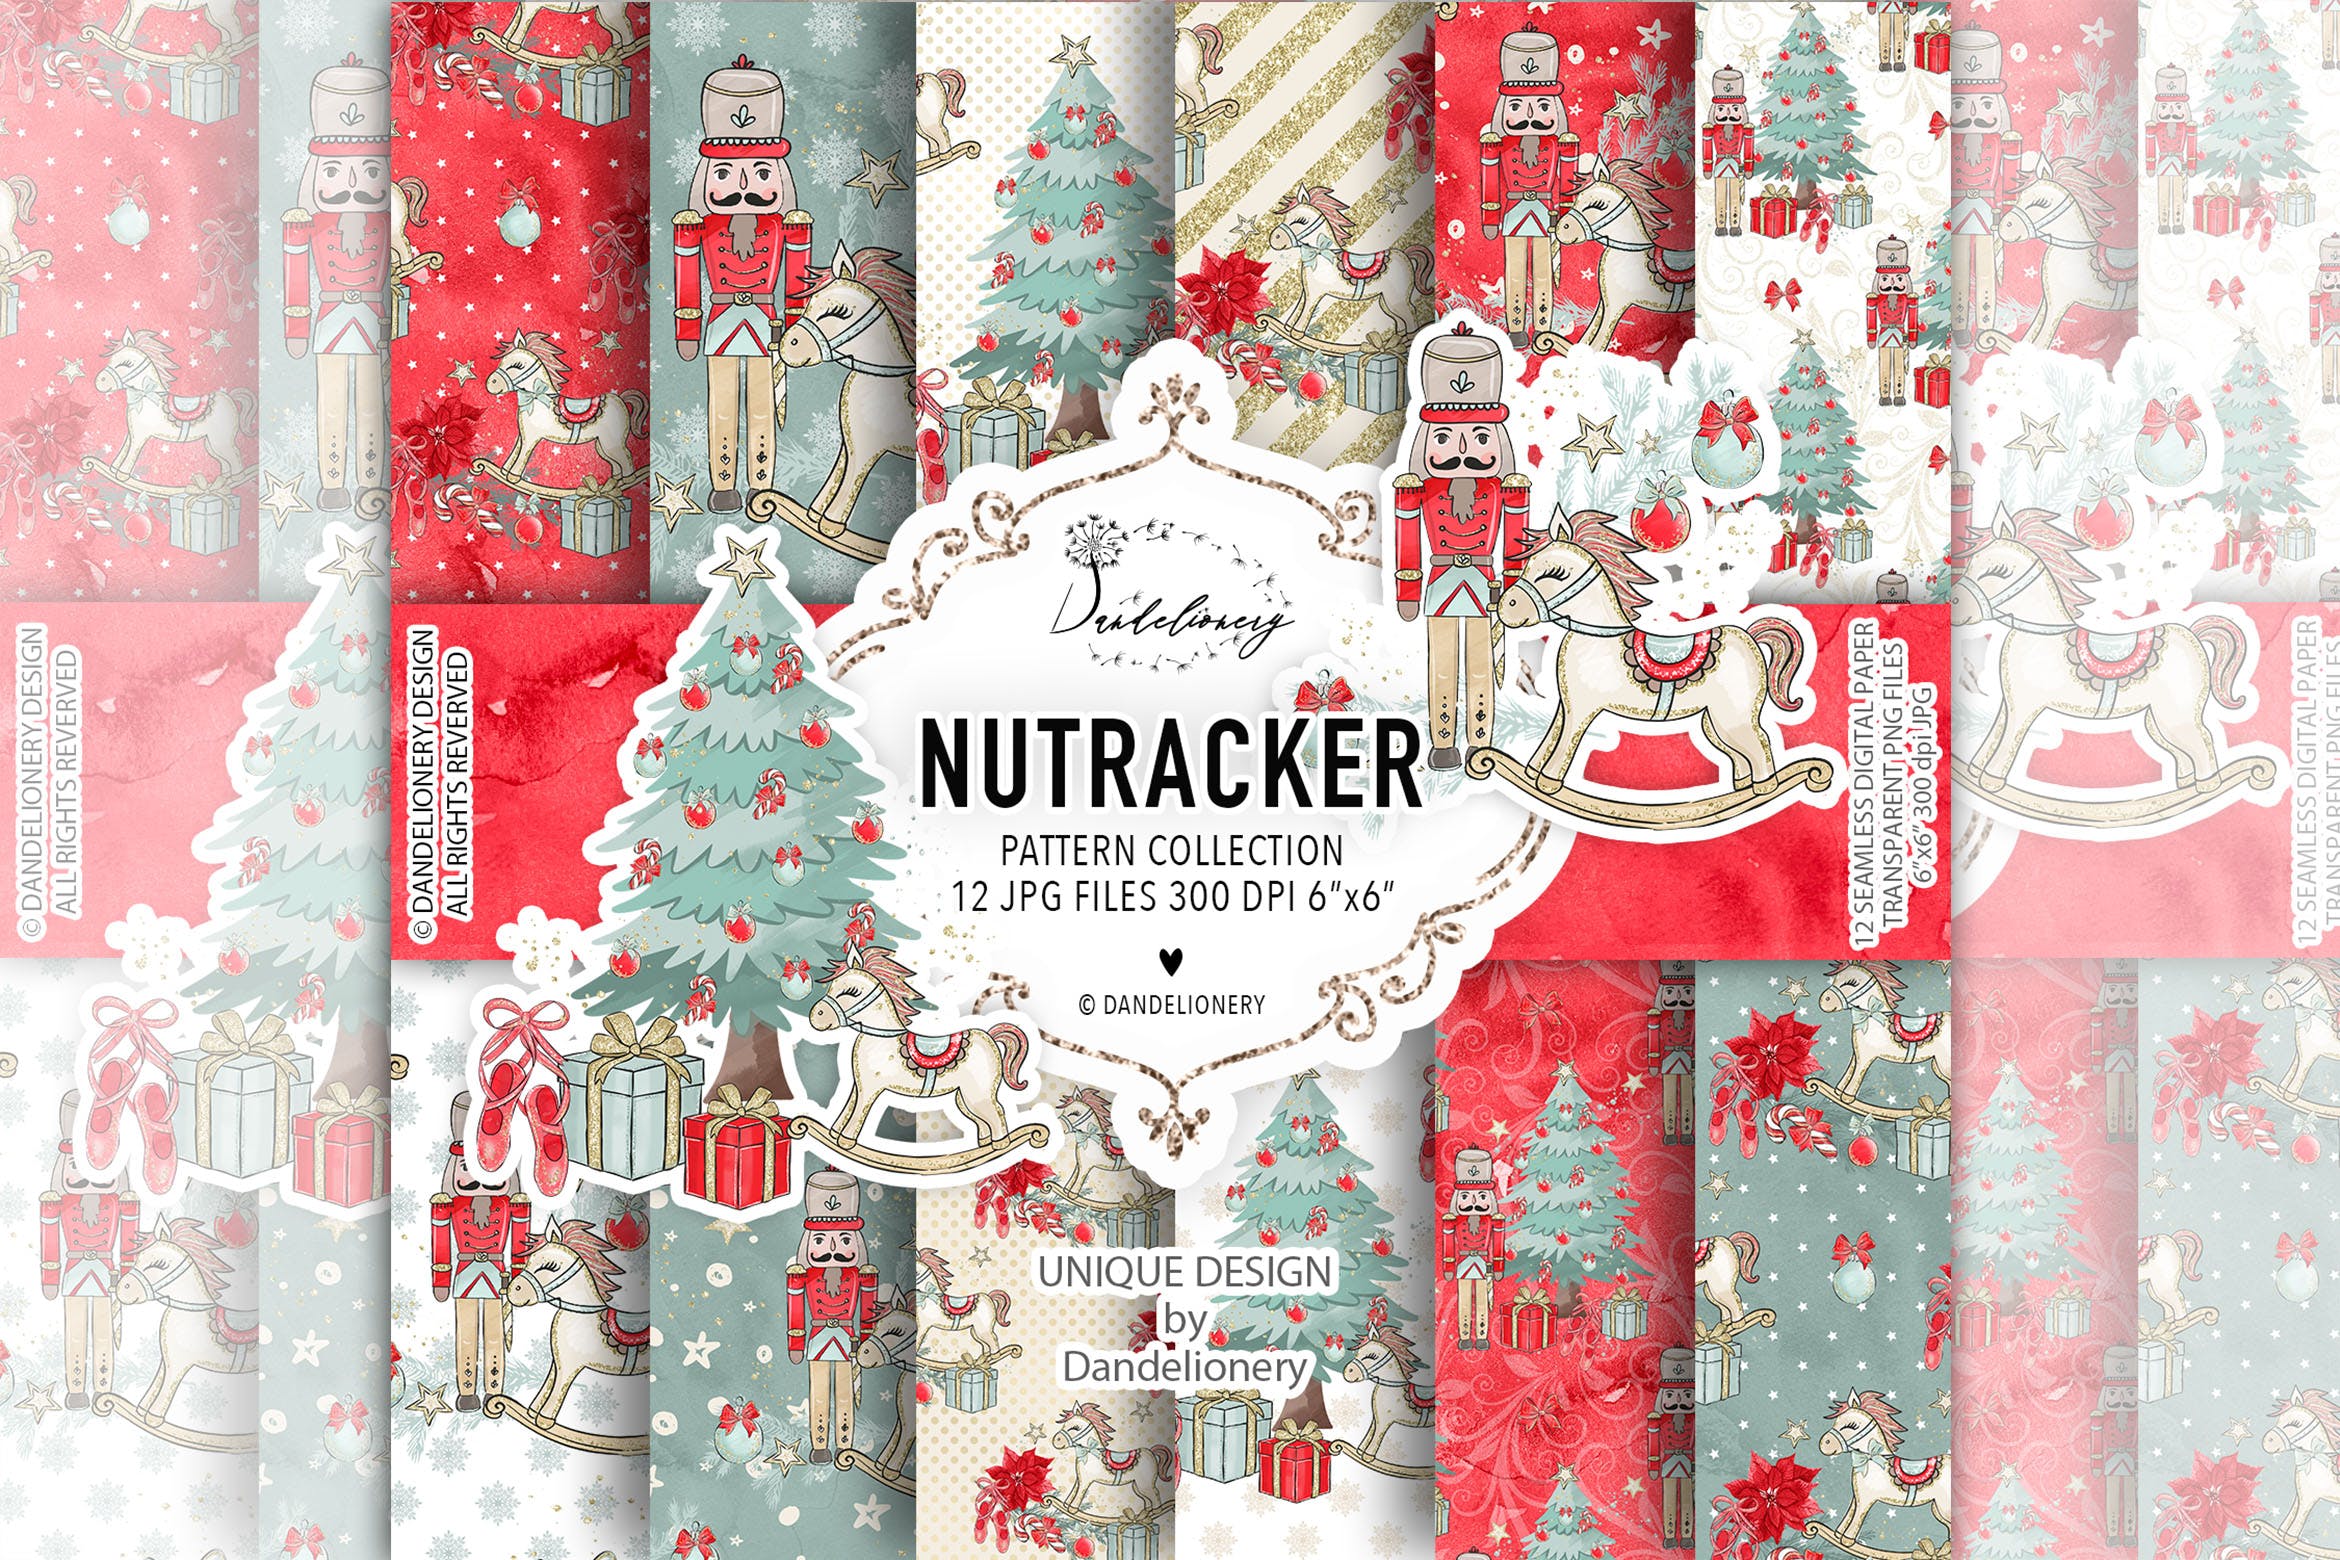 圣诞节主题胡桃夹子水彩手绘数码纸张图案背景素材 Christmas Nutcracker digital paper pack插图